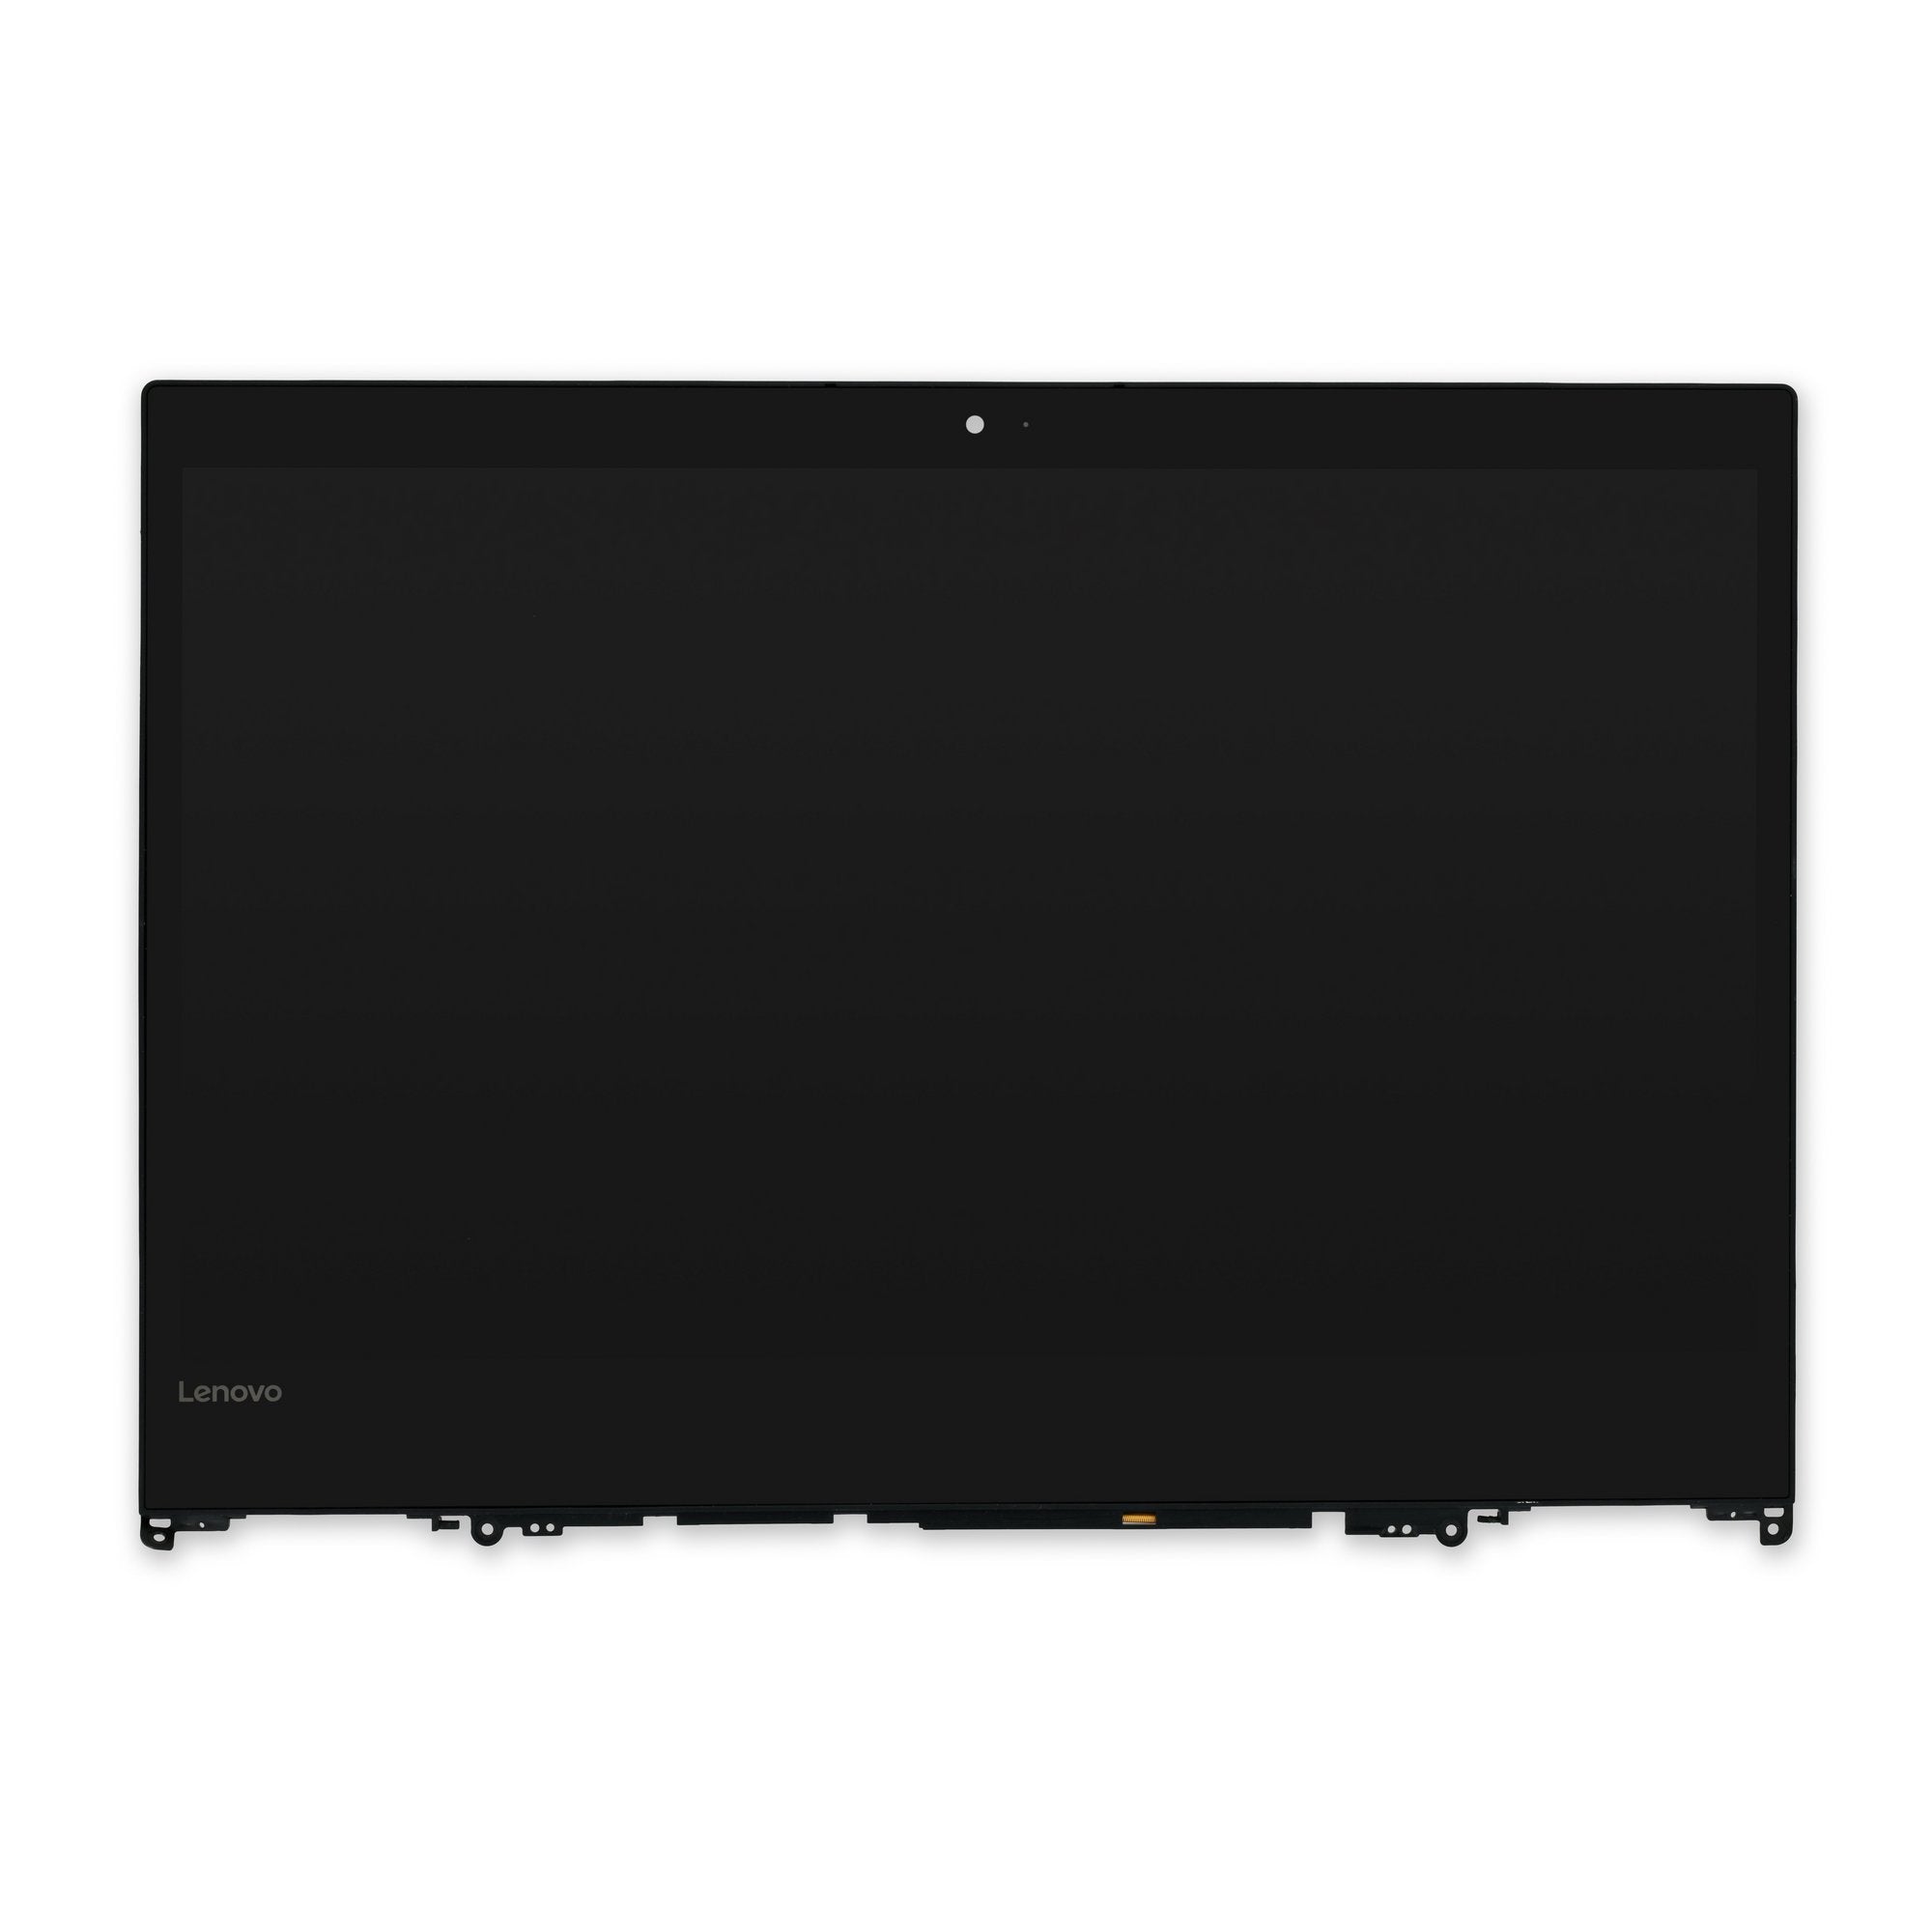 Lenovo Yoga 520 (14") and Flex 5-1470 FHD LCD Panel Used